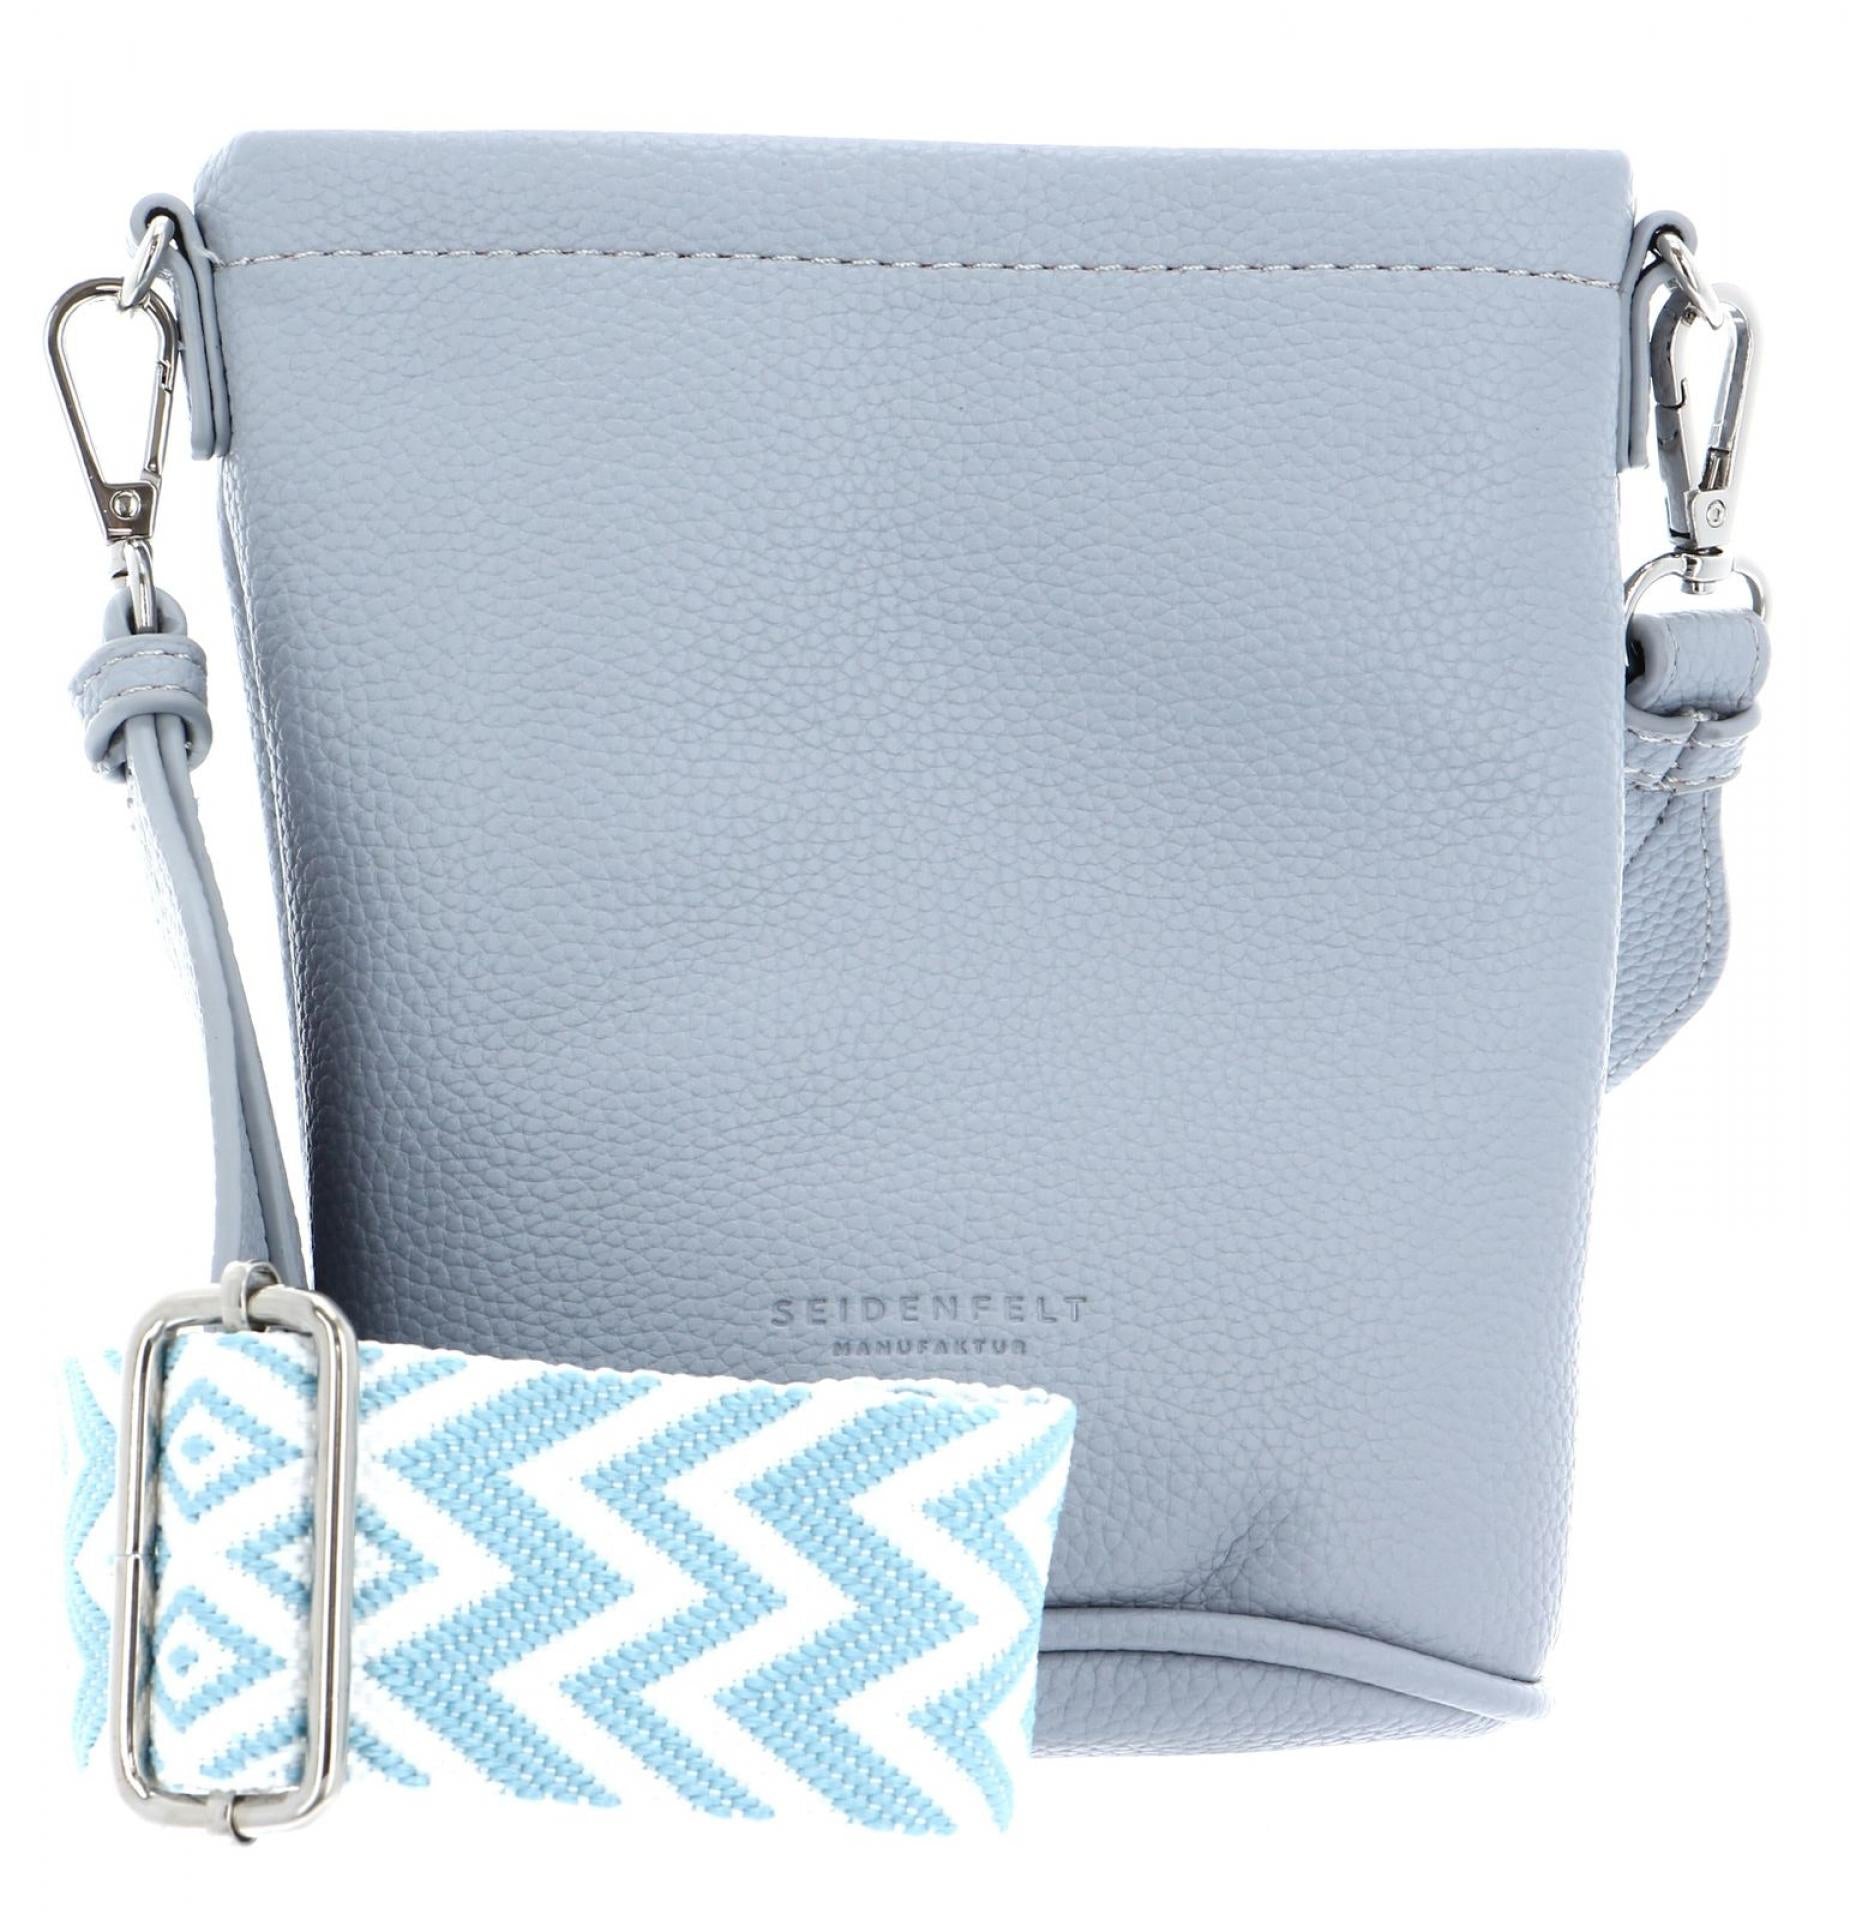 Seidenfelt  Small Bucket Handtasche Persby - Farbe: soft blue